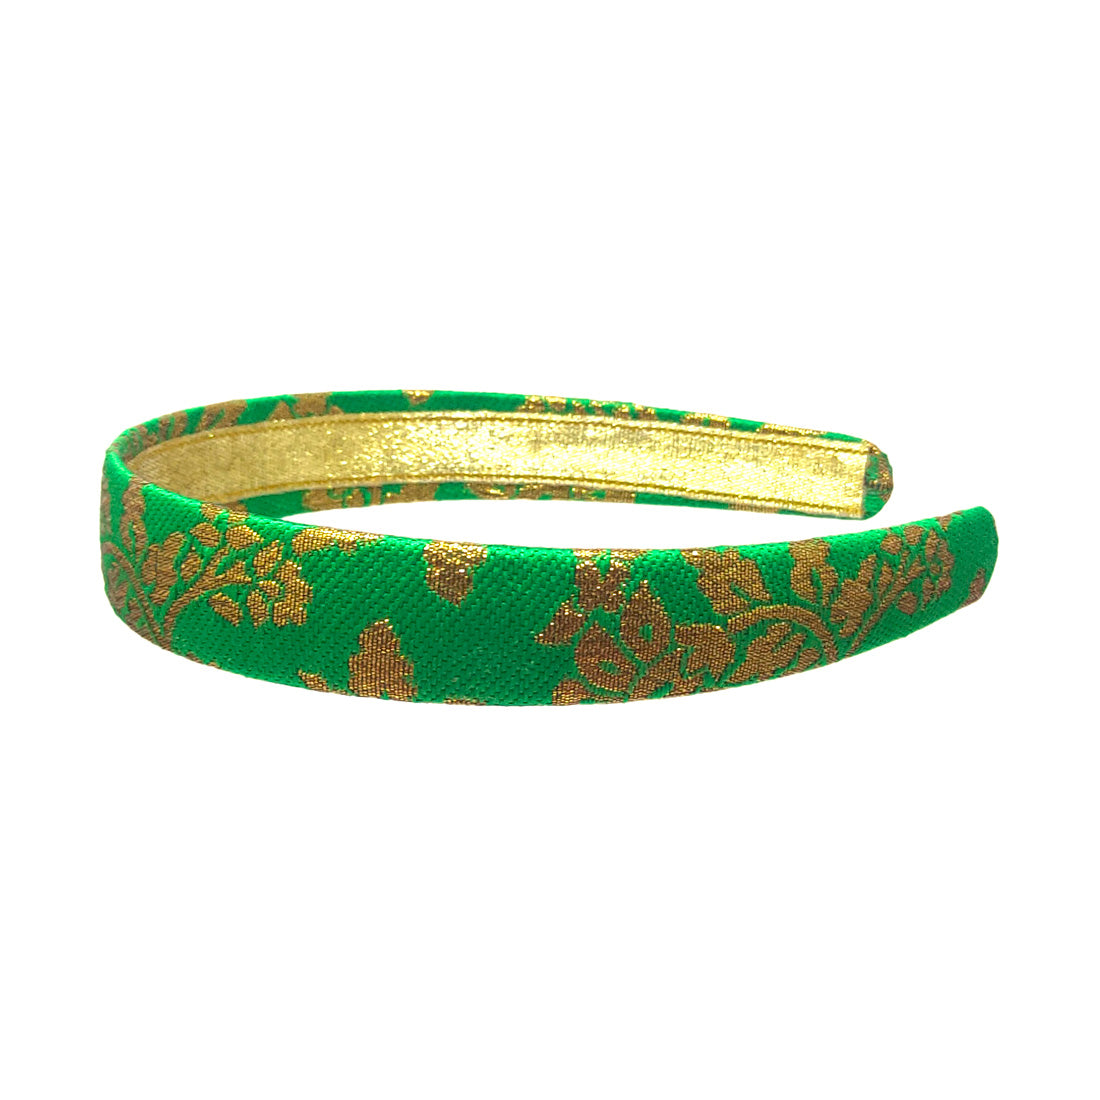 Anokhi Ada Handmade Fabric Hairband/Headband for Girls and Women (Light Green)-14-04H